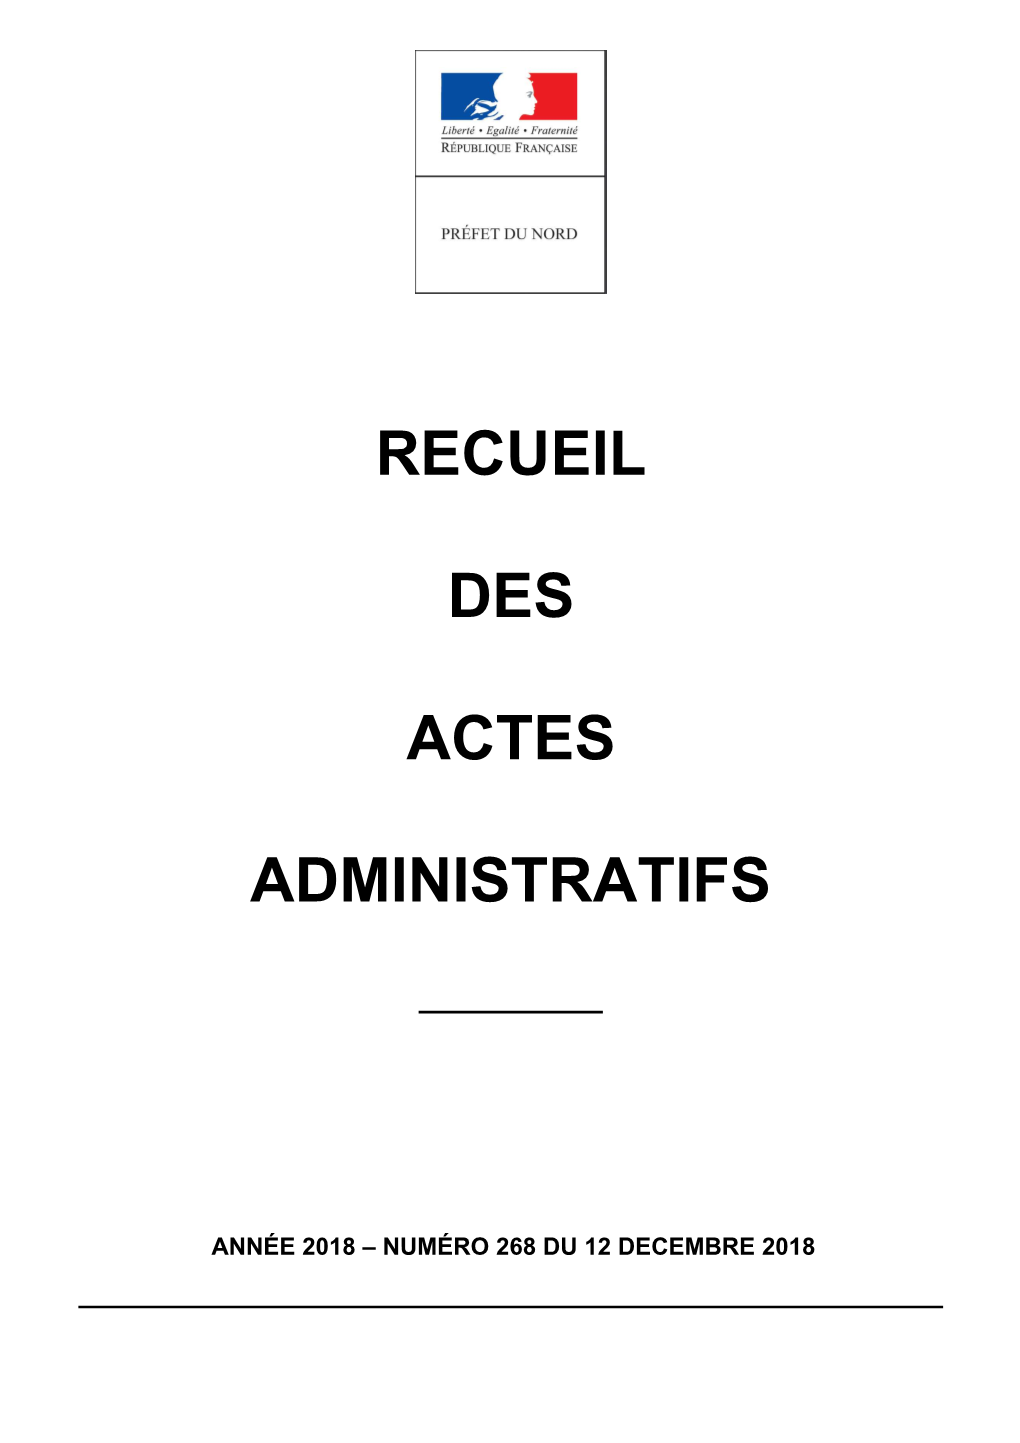 Recueil Des Actes Administratifs De La Préfecture Du Nord Année 2018-N°268 Du 12 Décembre 2018